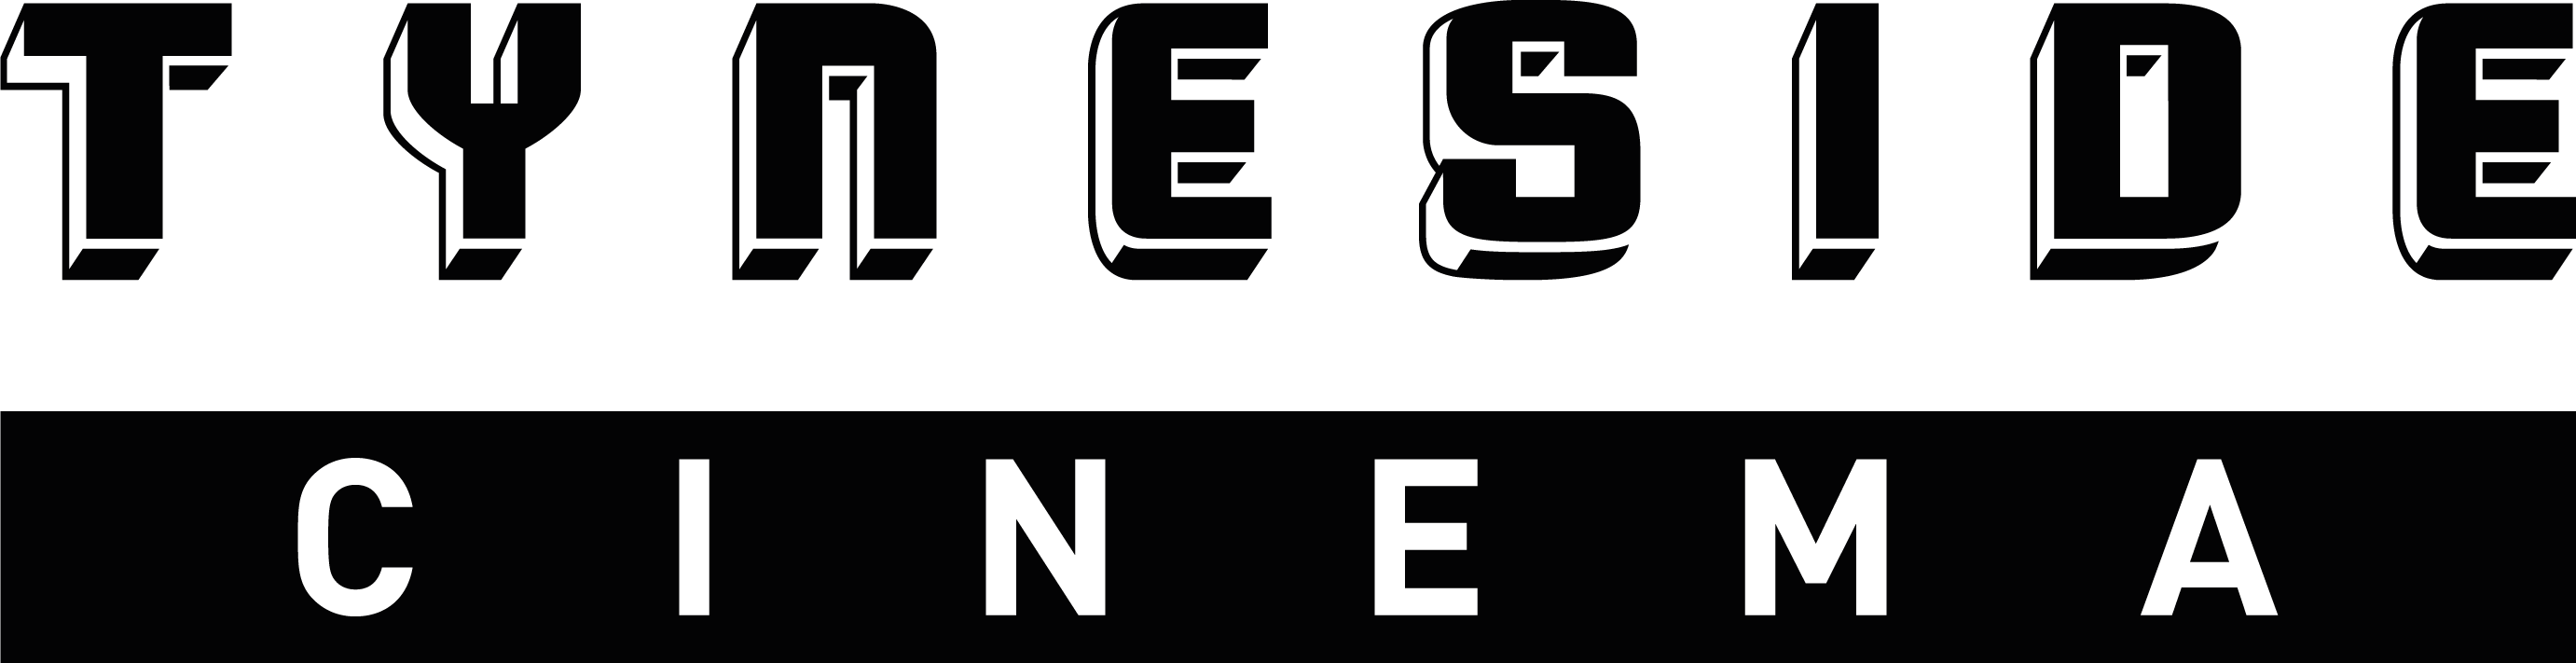 logo for Tyneside Cinema